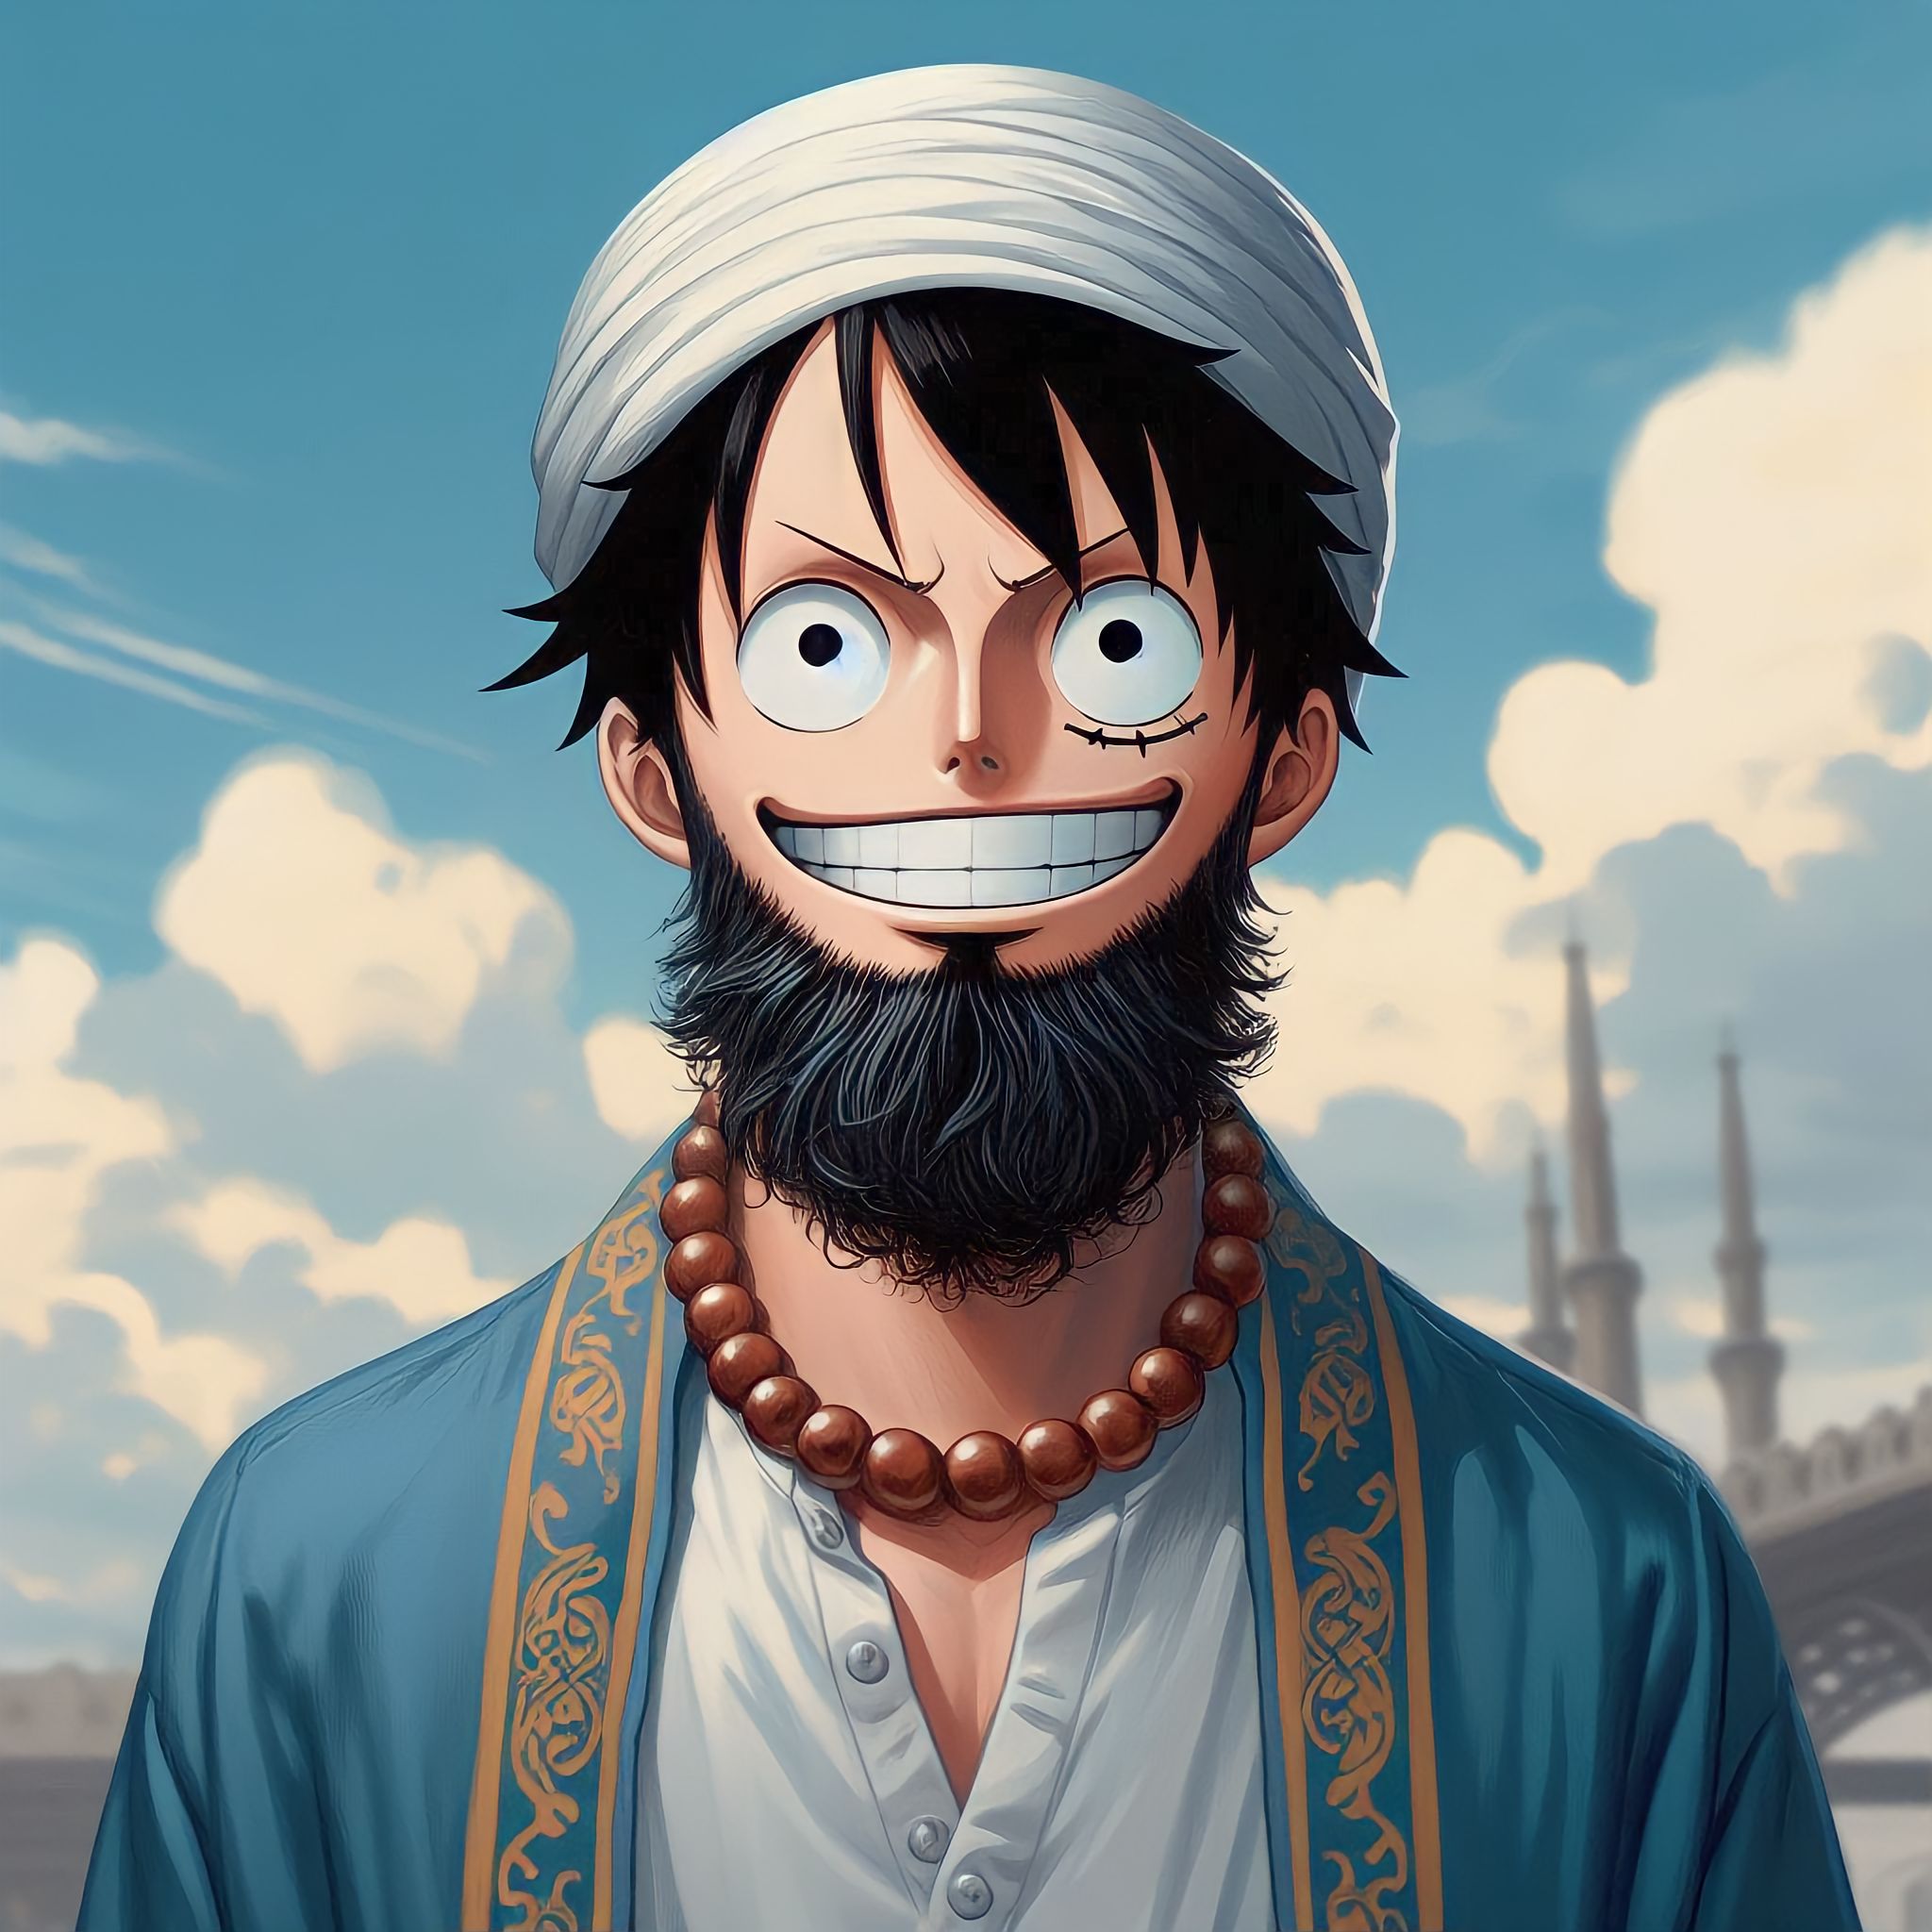 Anime 2048x2048 anime boys anime Monkey D. Luffy One Piece Muslim beard AI art smiling clouds sky scars beads teeth digital art black hair short hair